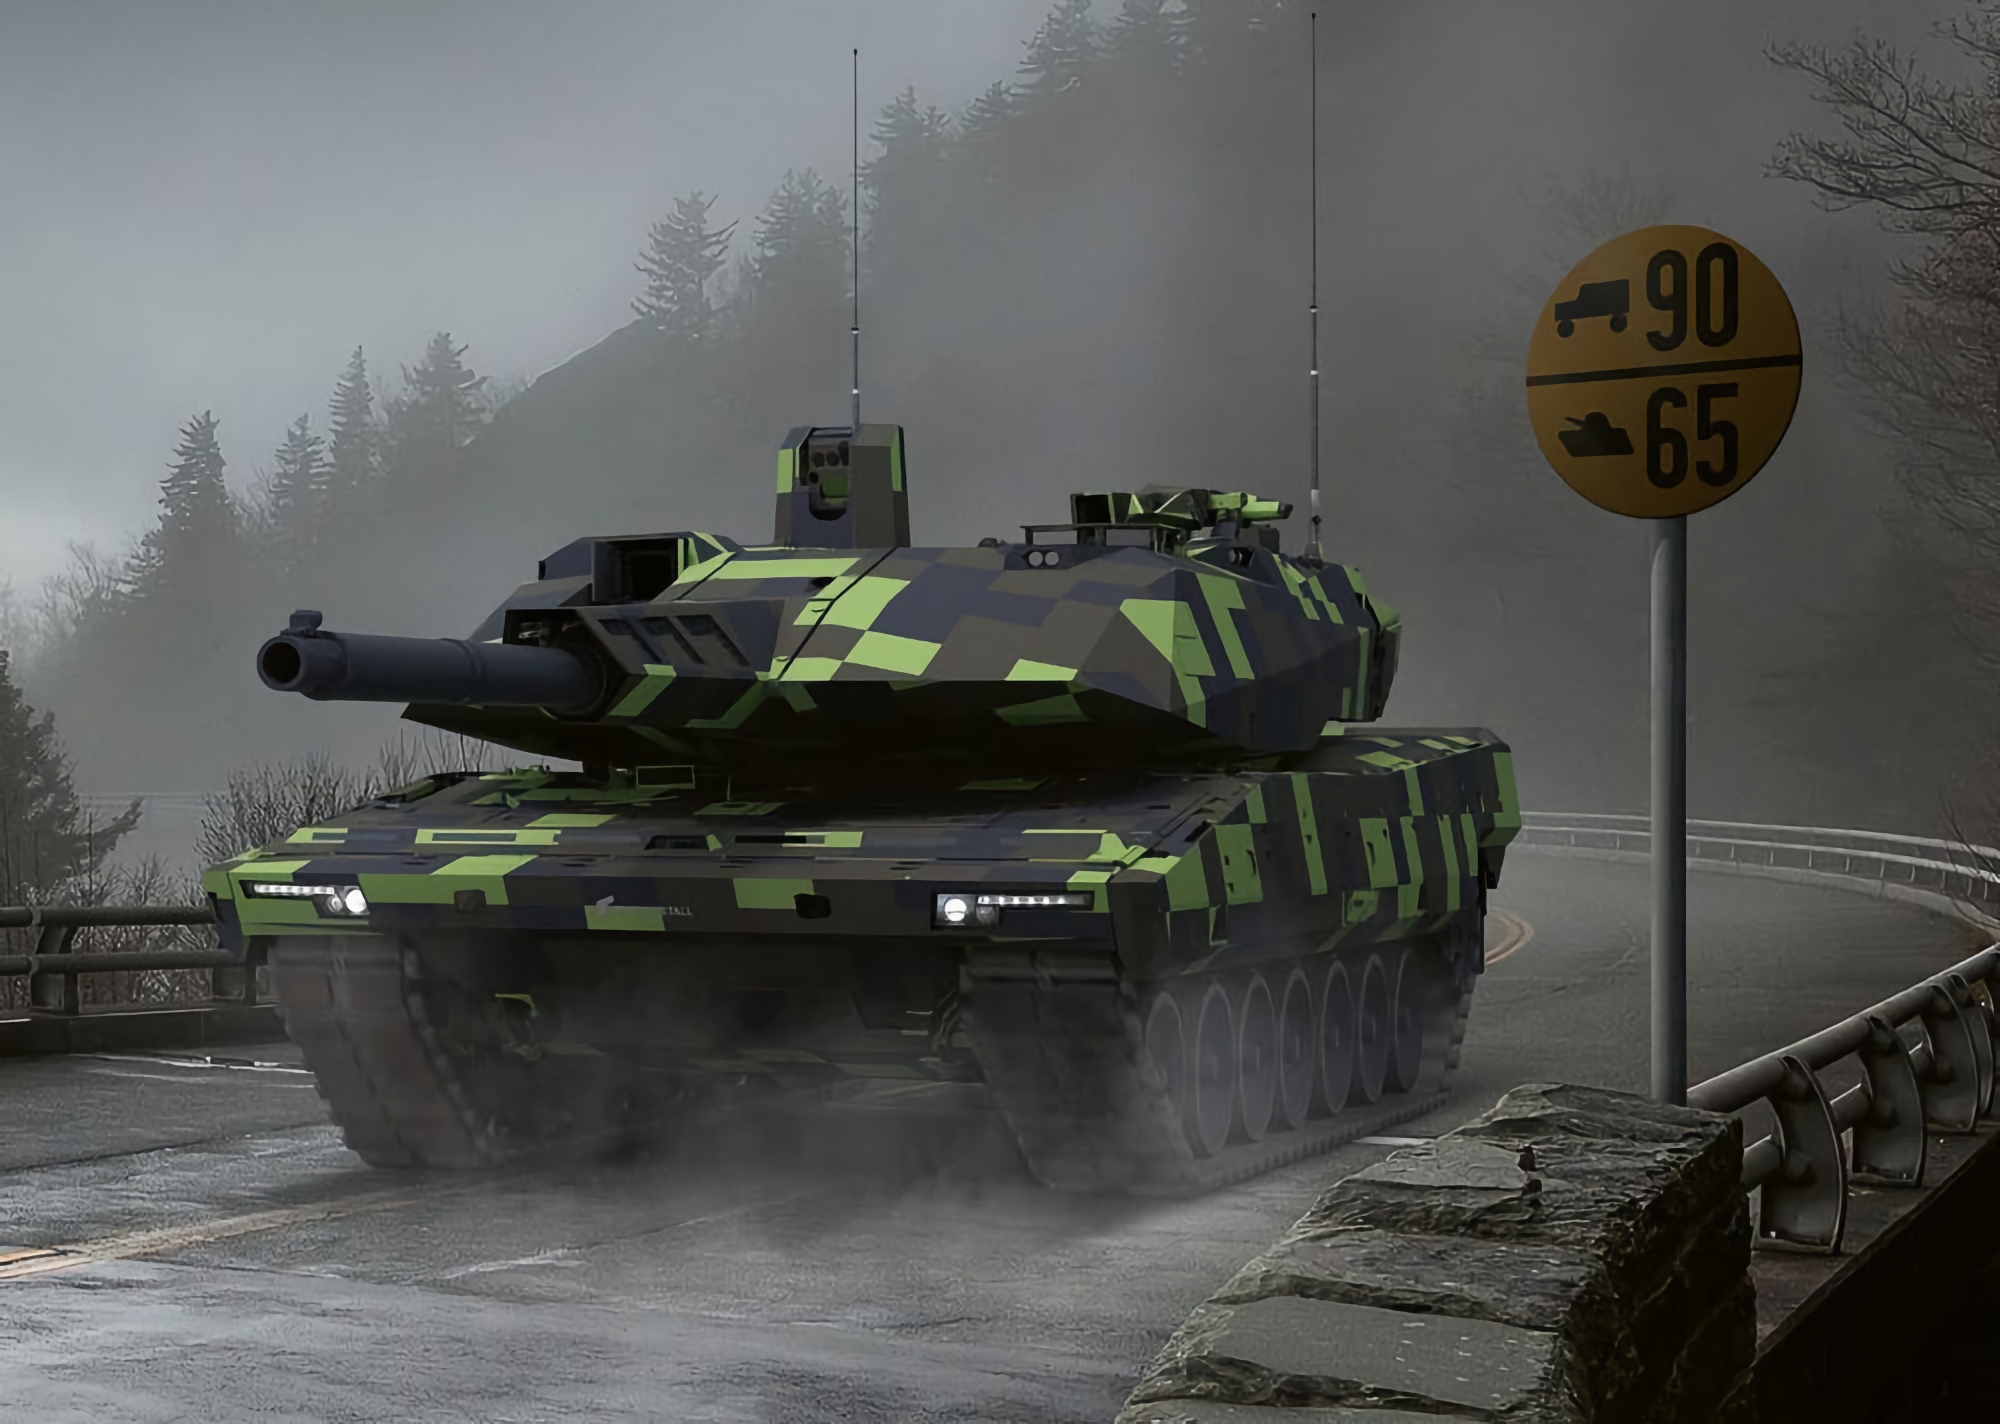 Rheinmetall przedstawia Panther KF51: czołg nowej generacji obsługujący sztuczną inteligencję ze zintegrowanym dronem Kamikaze i pilotem zdalnego sterowania